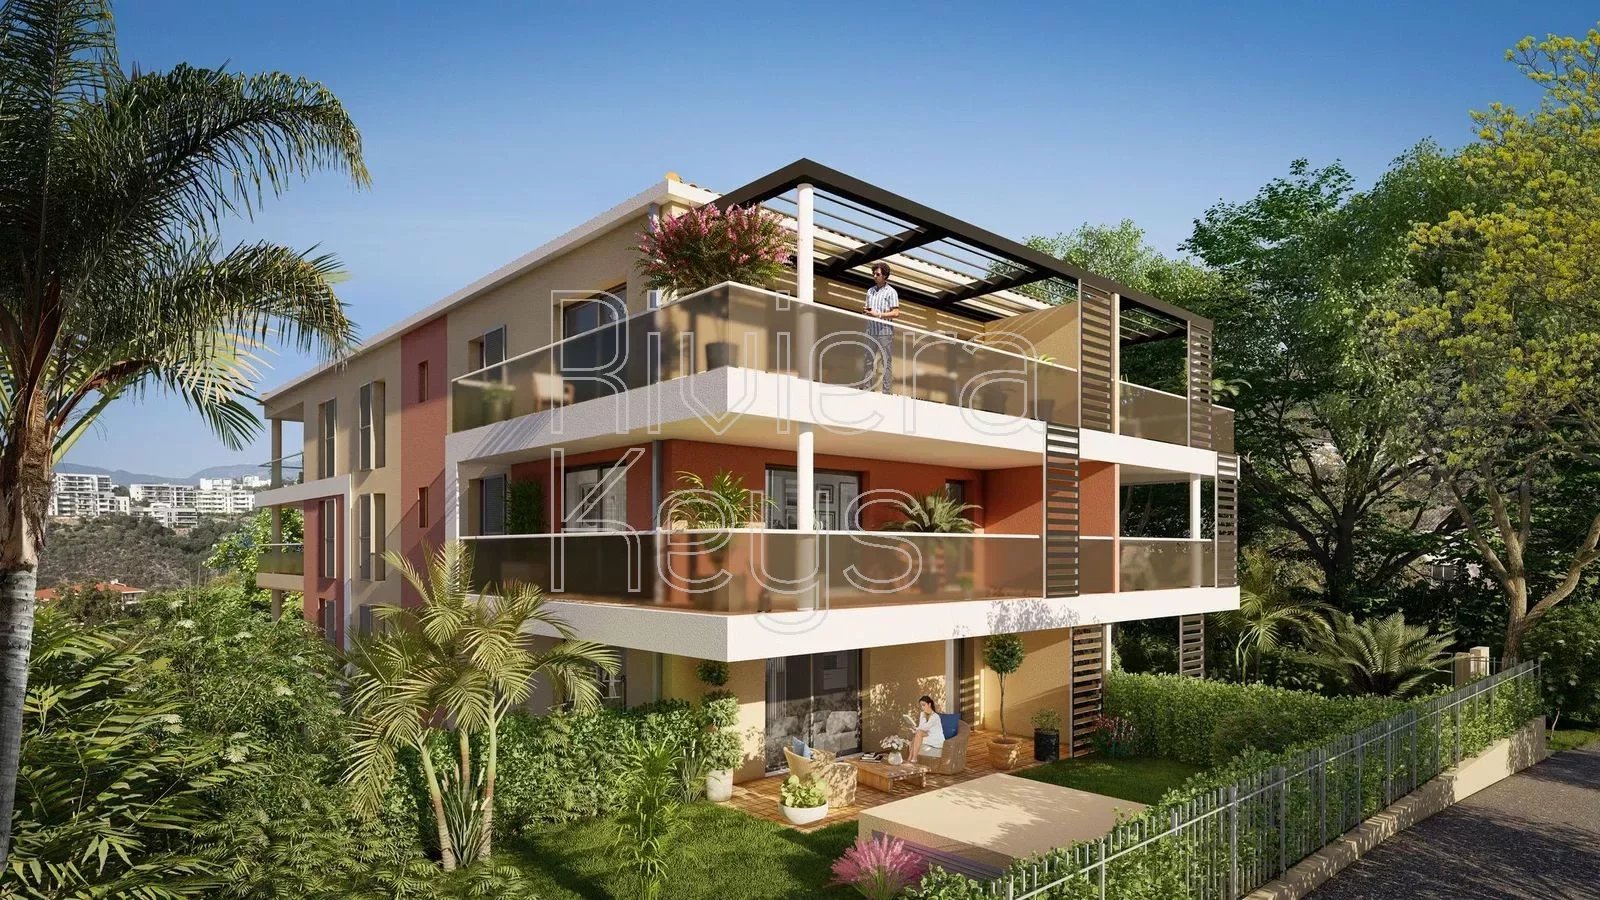 SAINT-RAPHAËL : Nouvelle résidence au calme, proche toutes commodités (3 à 4 pièces, 62 à 83 m²) Boulouris